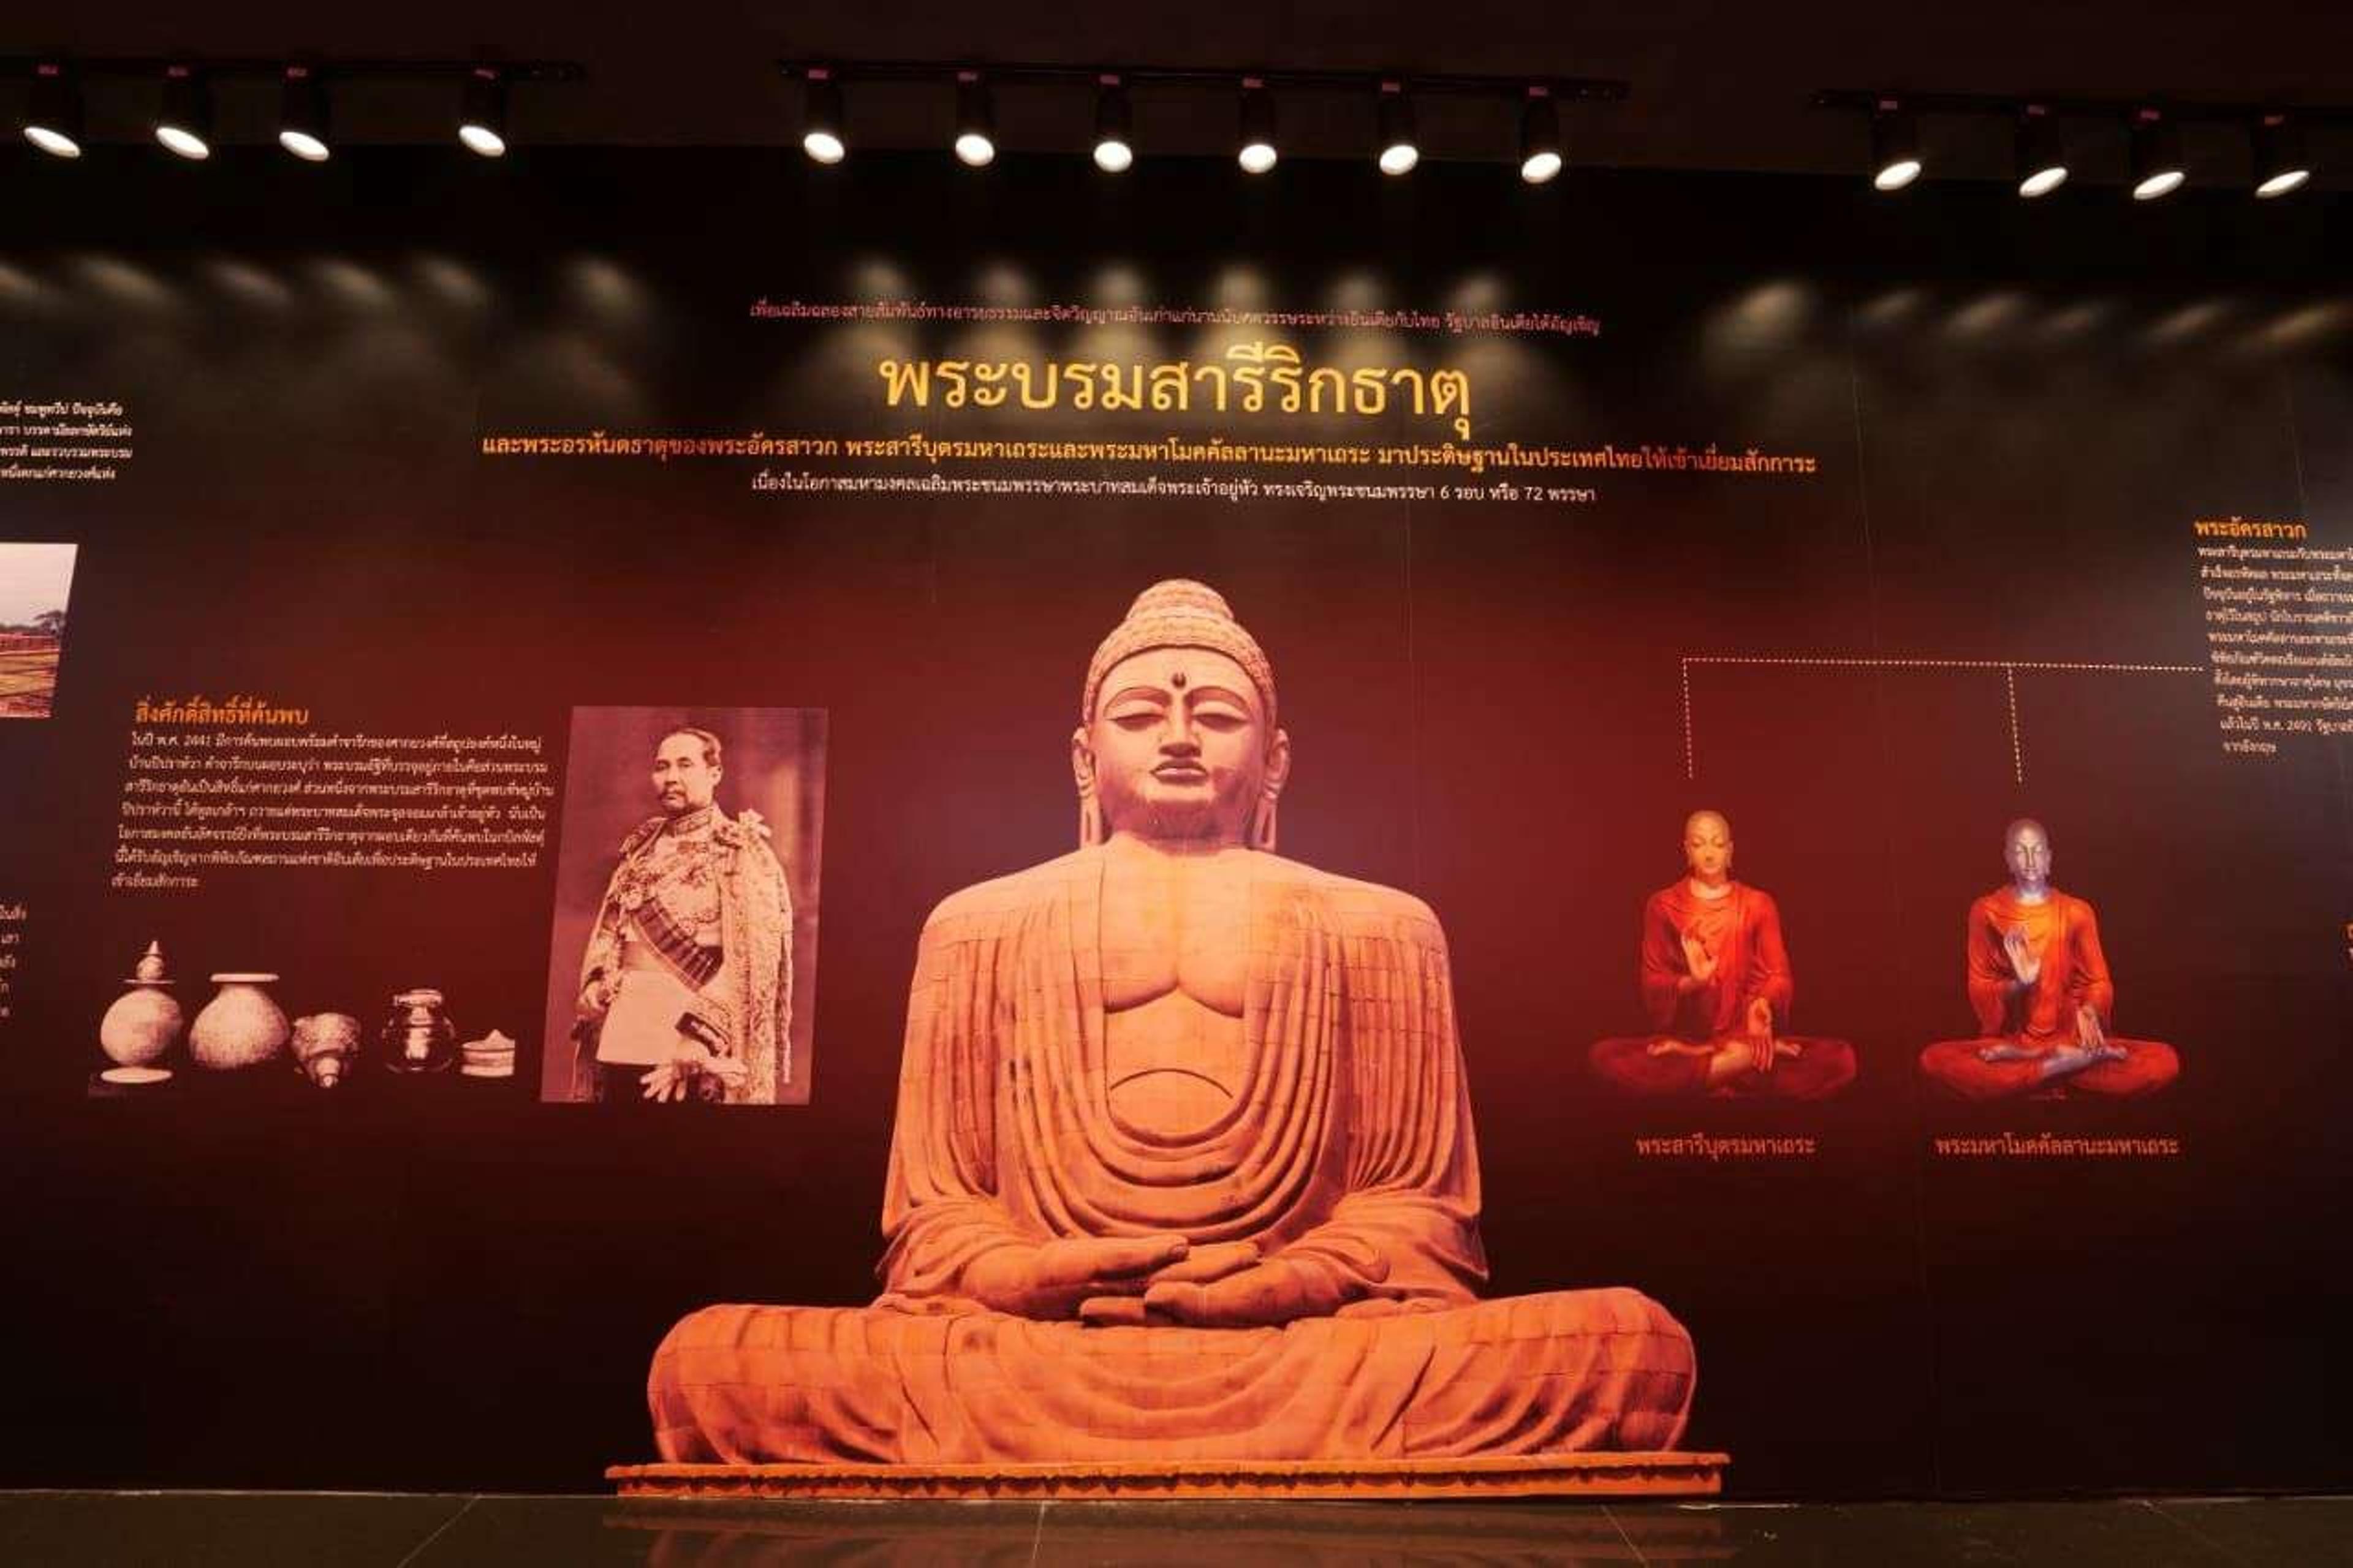 थाईलैंड में ‘कुशीनगर महापरिनिर्वाण स्थल’ बना आकर्षण का केन्द्र: देखें तस्वीरें